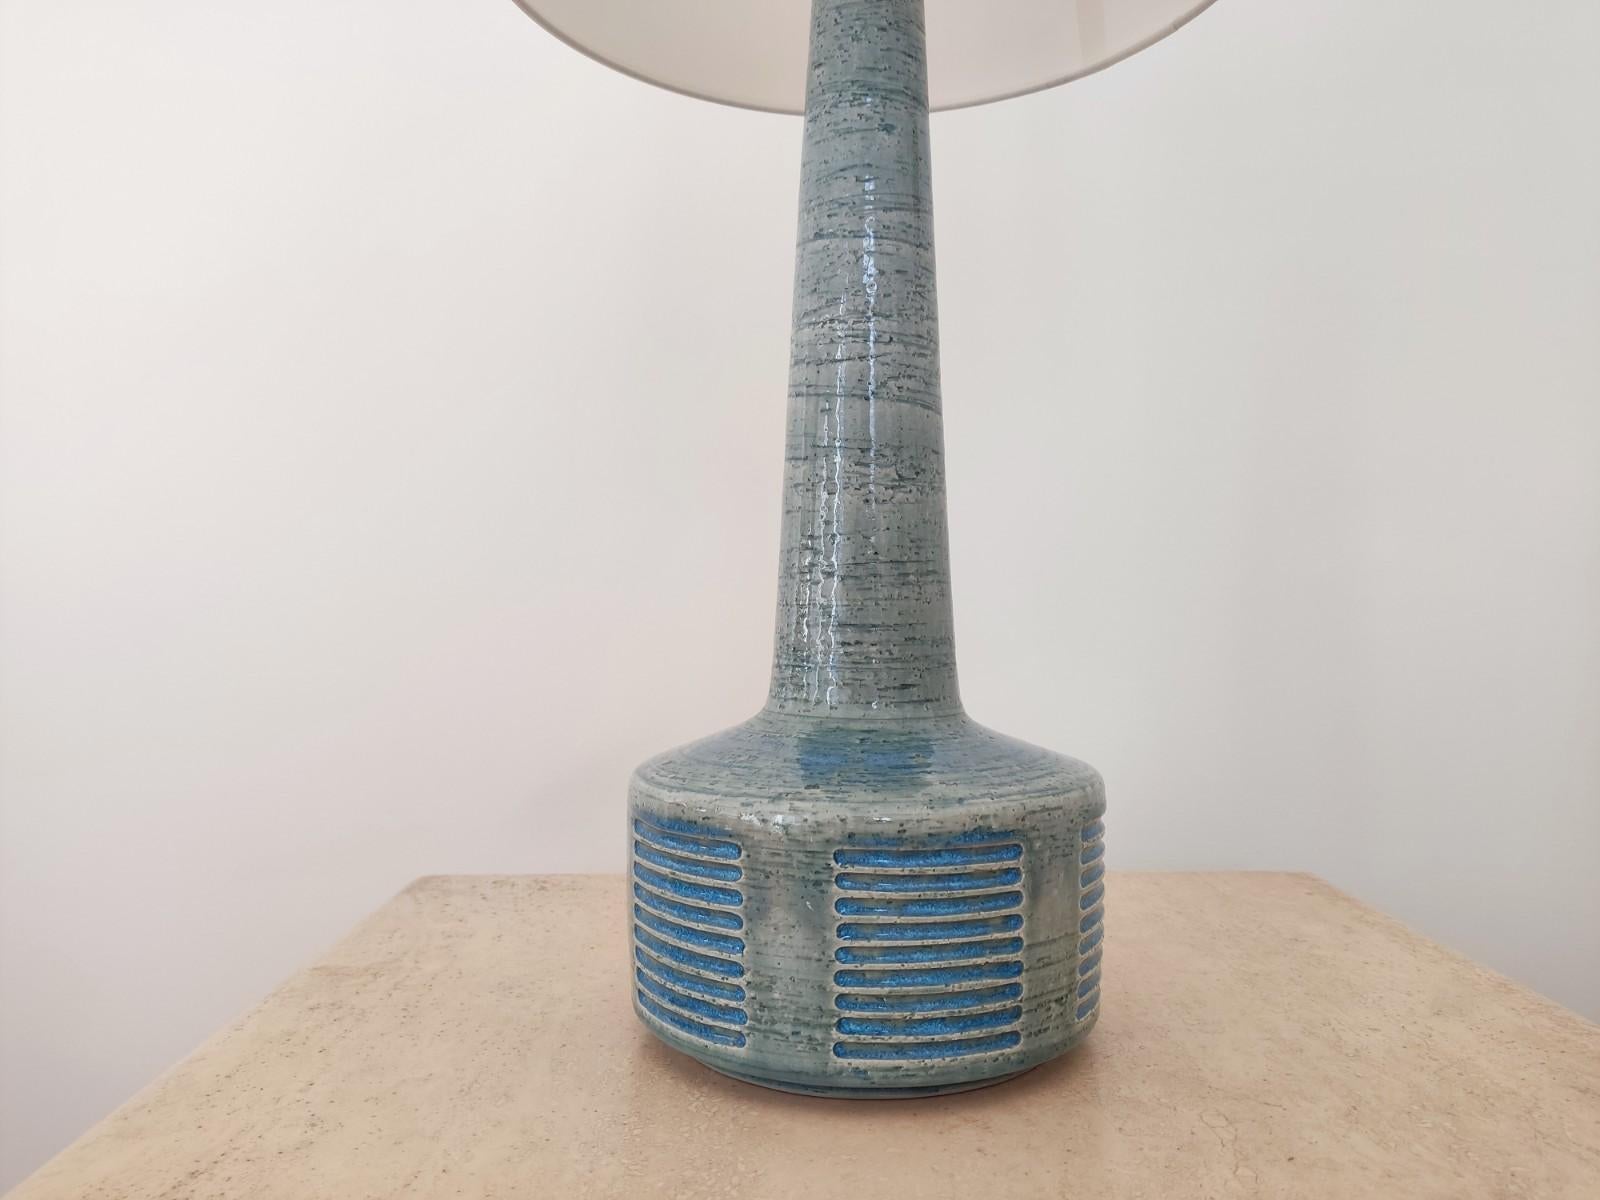 Rare lampe de table danoise Palshus par Per Linnemann Schmidt. Palshus produit des œuvres qui utilisent les techniques de chamotte. Cette lampe est considérée au Danemark comme le joyau de la couronne.
L'abat-jour et le système électrique sont